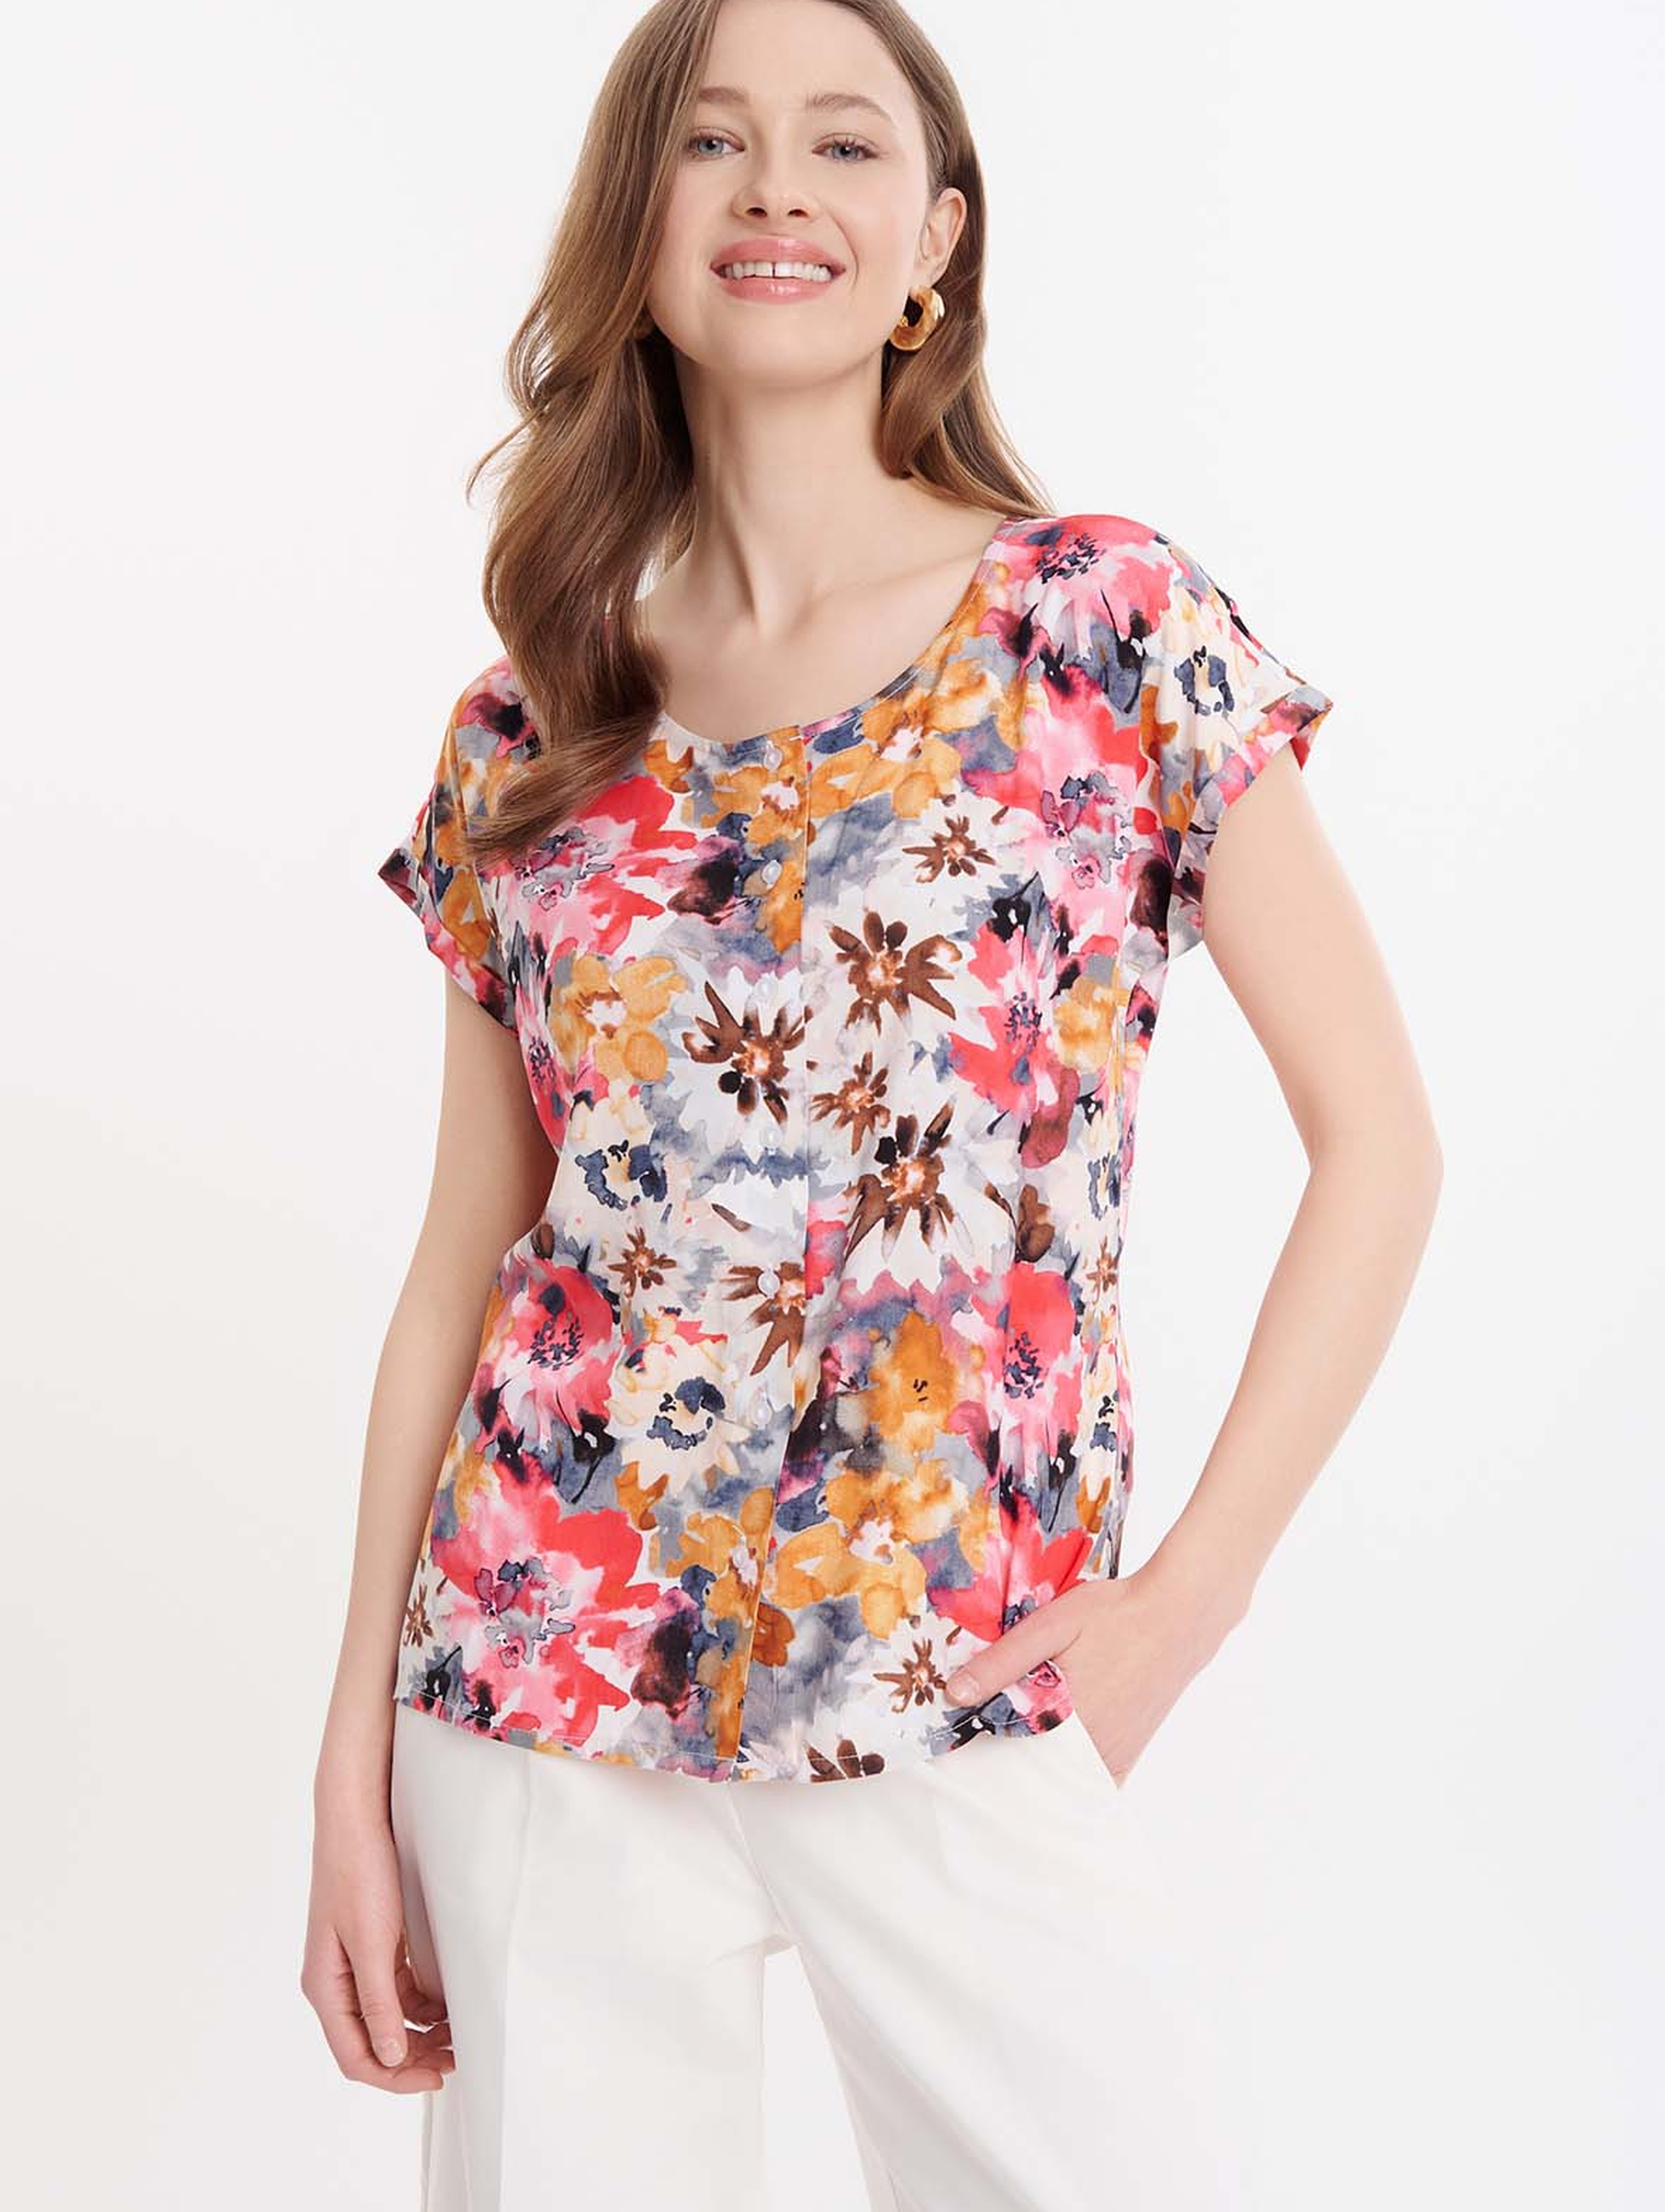 Damska koszulka z wiskozy w kolorowe kwiaty